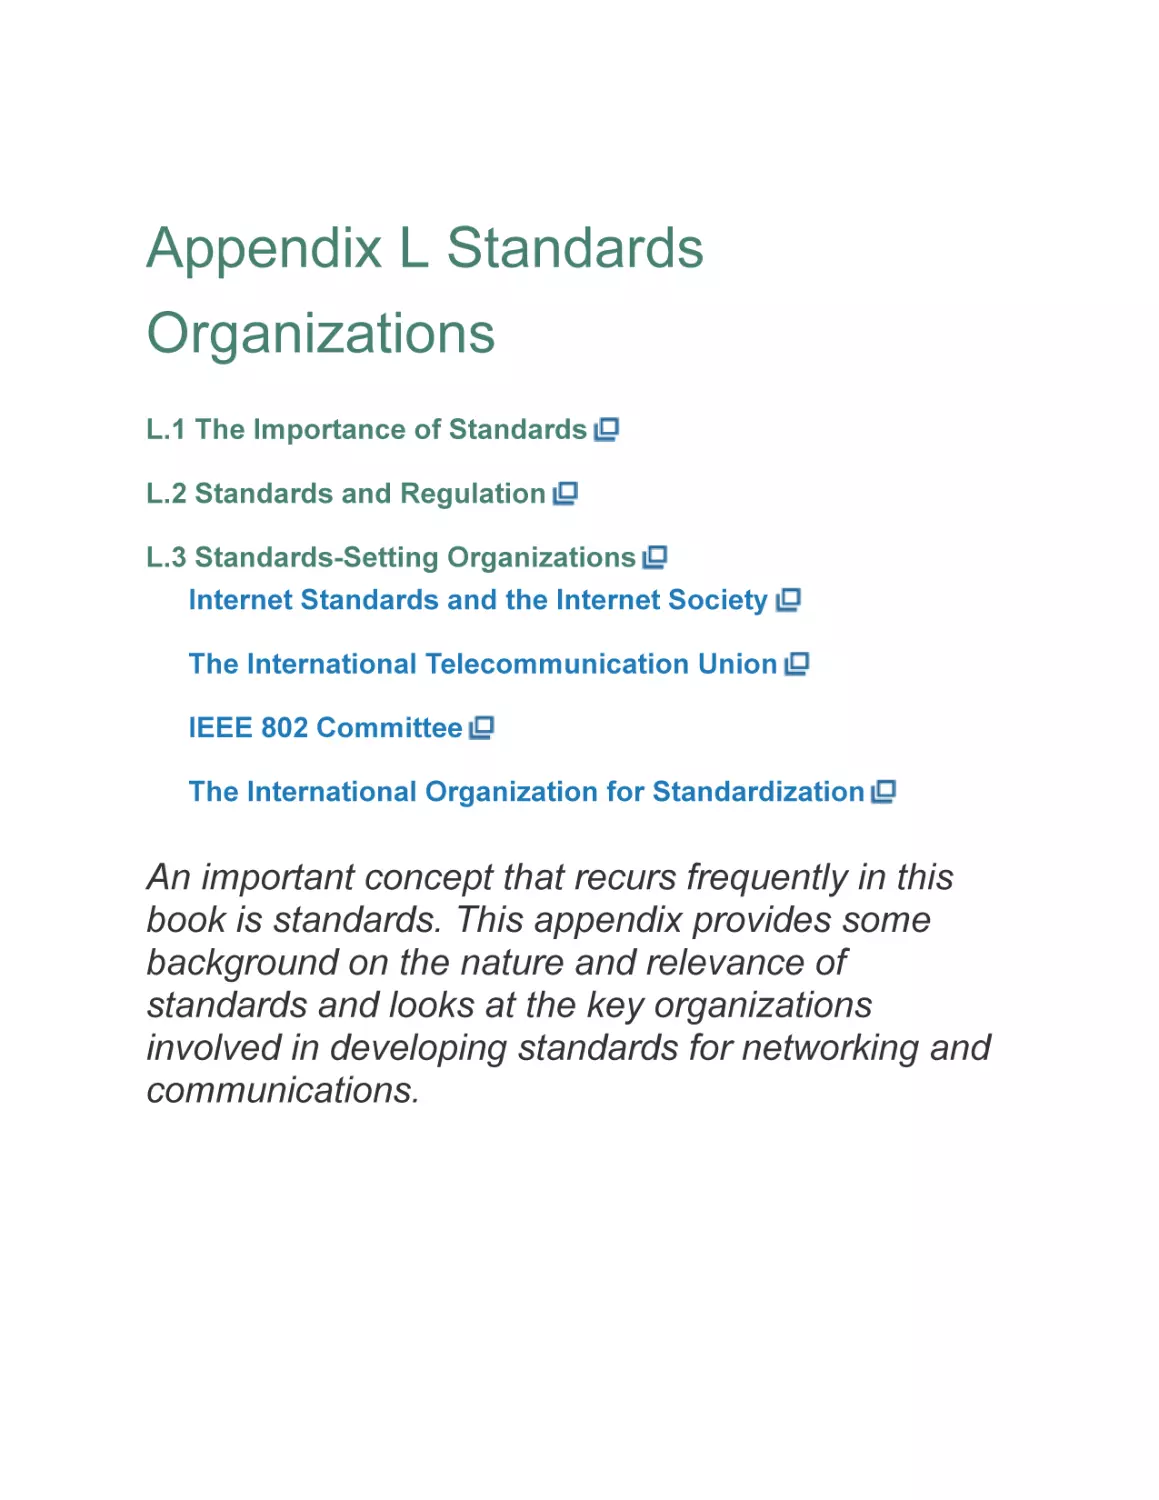 Appendix L Standards Organizations